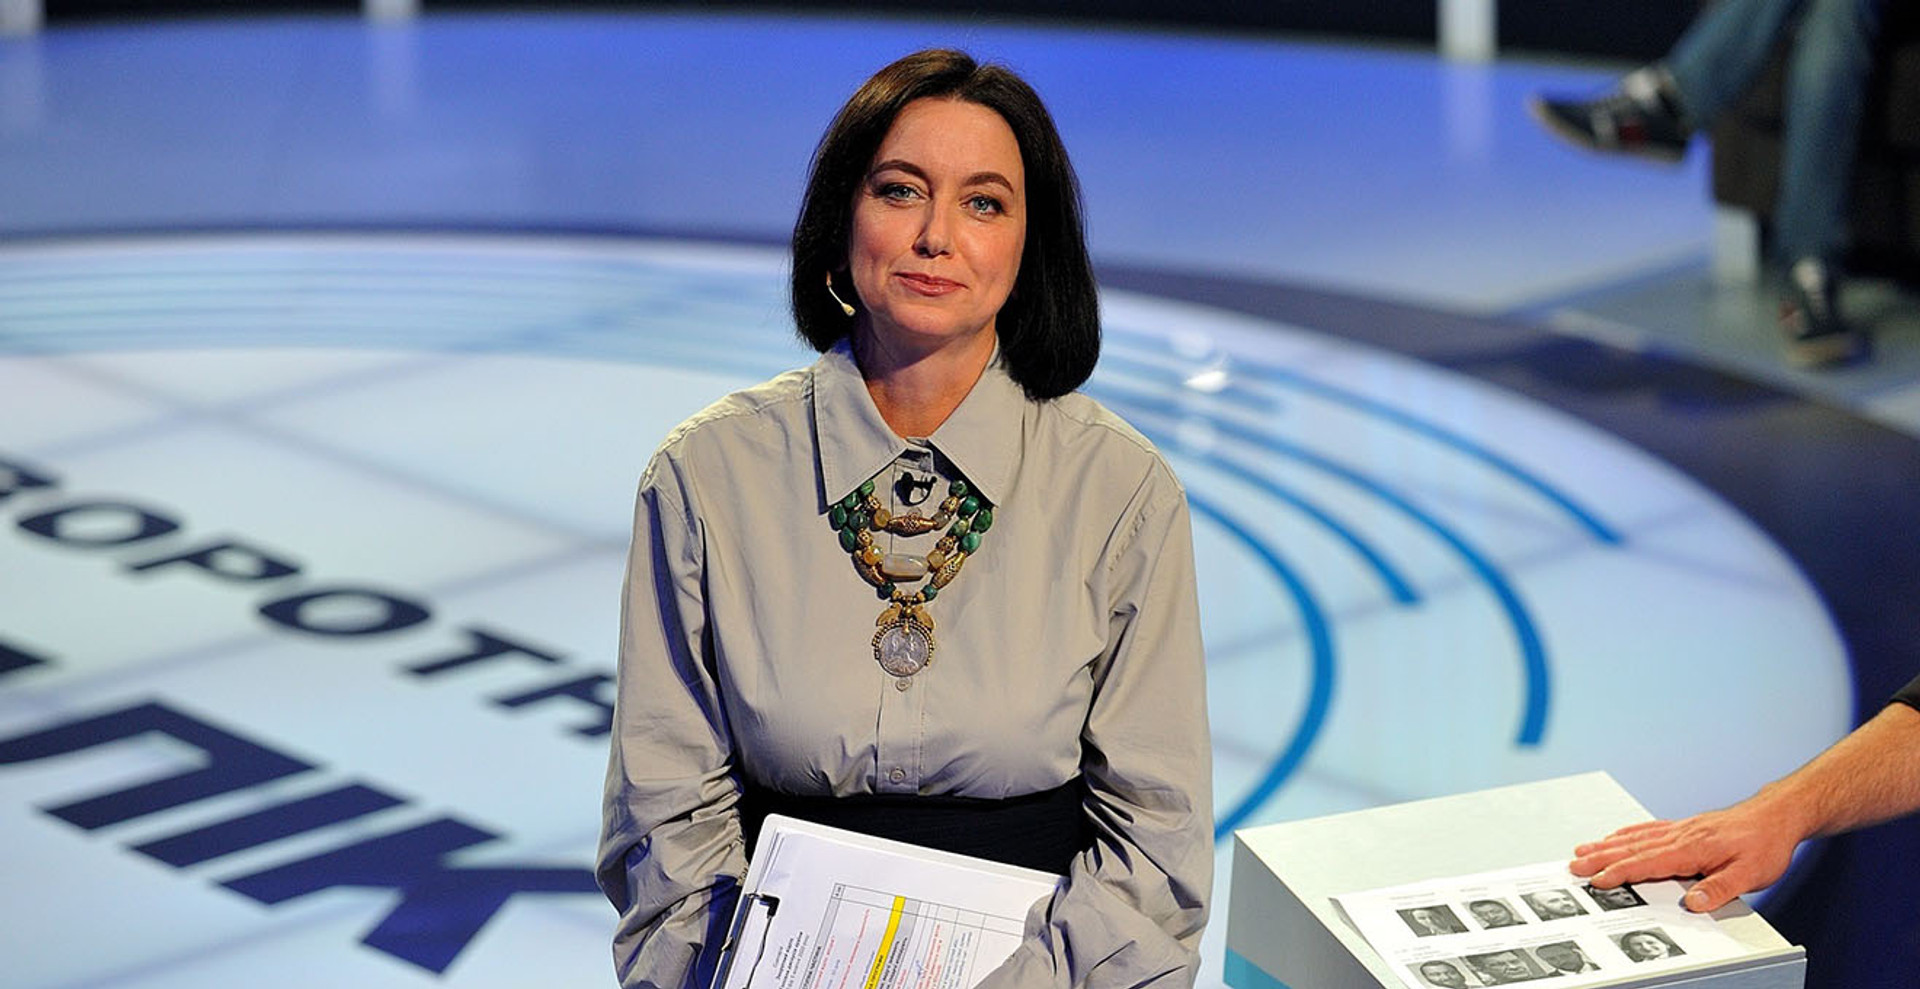 Телеведуча Мирослава Барчук: Вірю, що все ще можу позитивно впливати на суспільство через телебачення